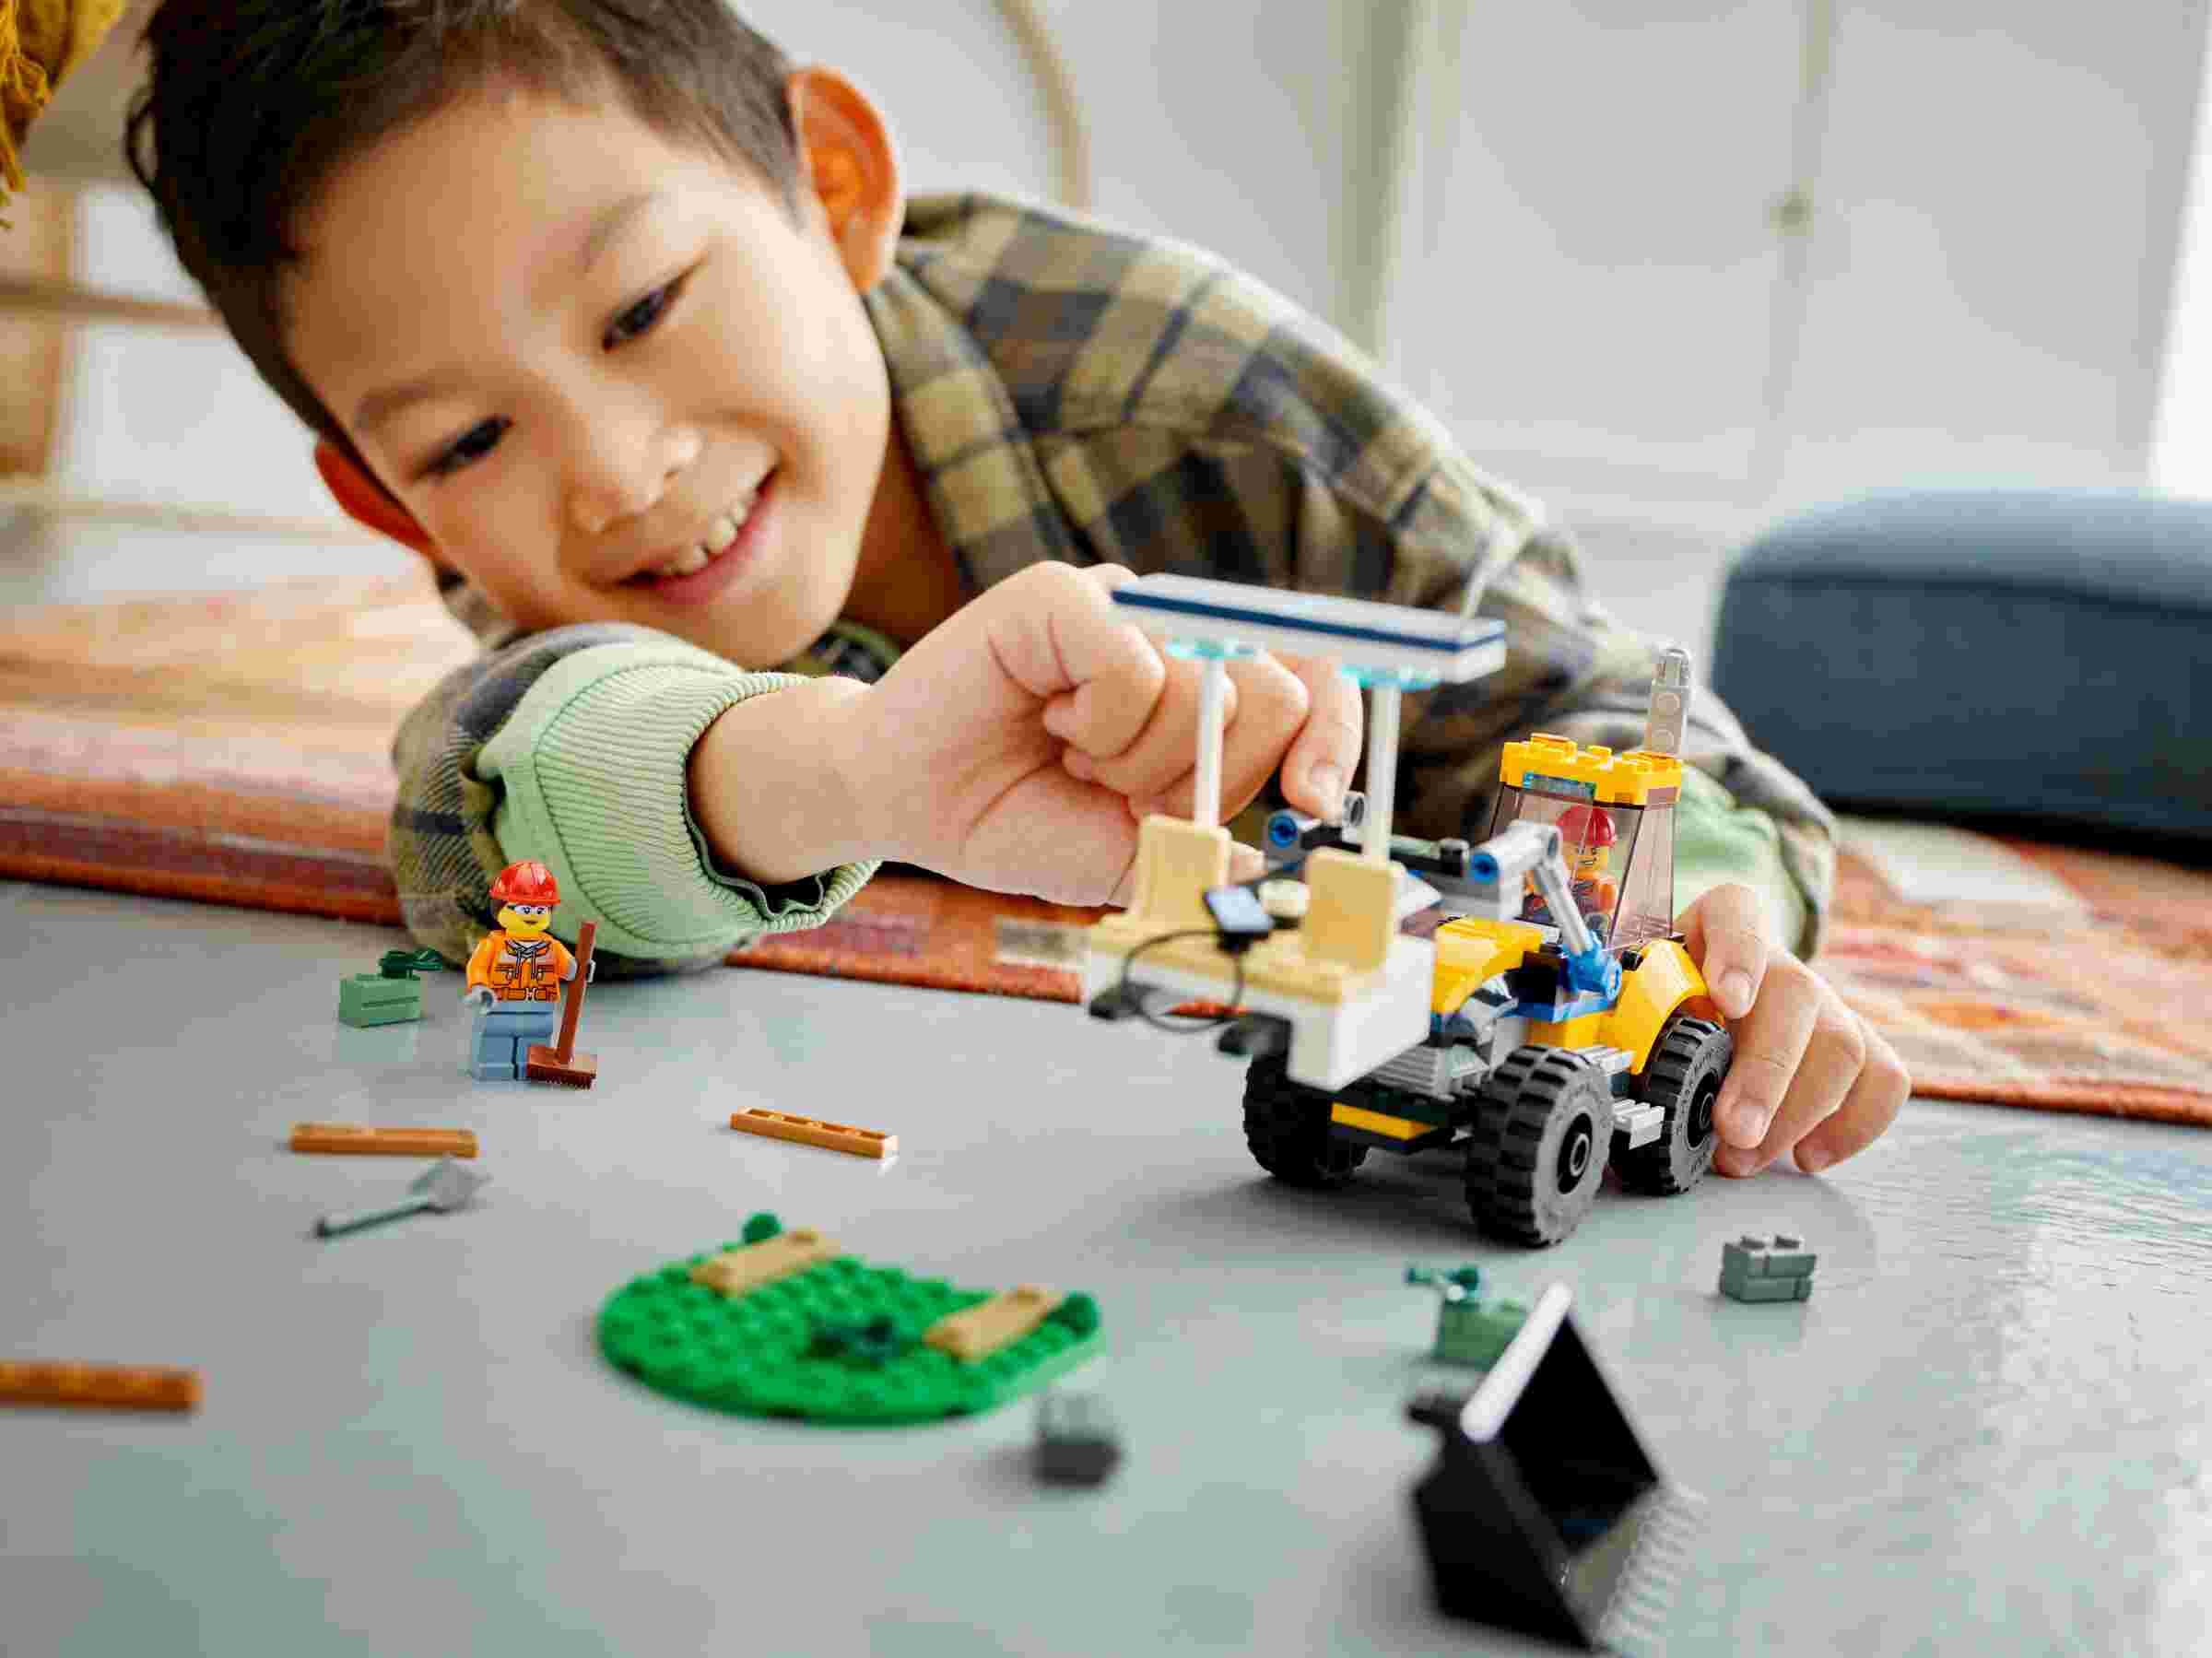 LEGO 60385 City Radlader, austauschbaren Anbaugeräten, Starken Fahrzeuge